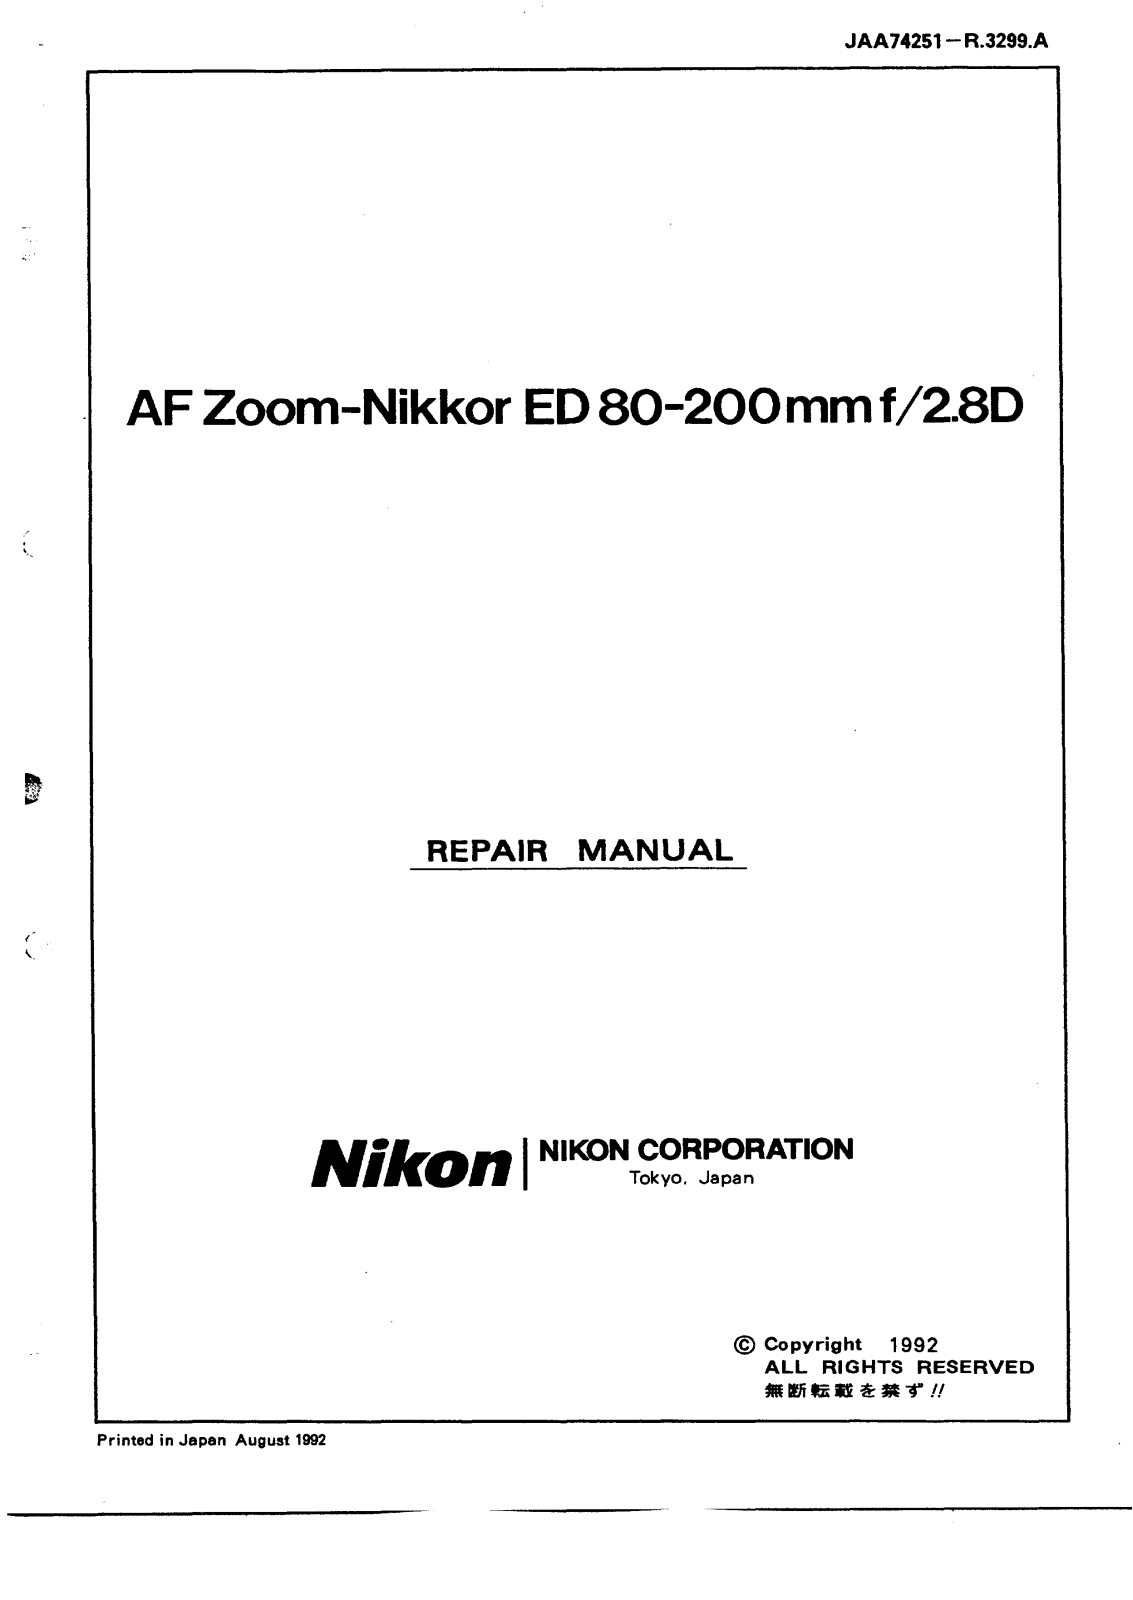 Nikon AF Zoom-Nikkor 80-200mm Service Manual